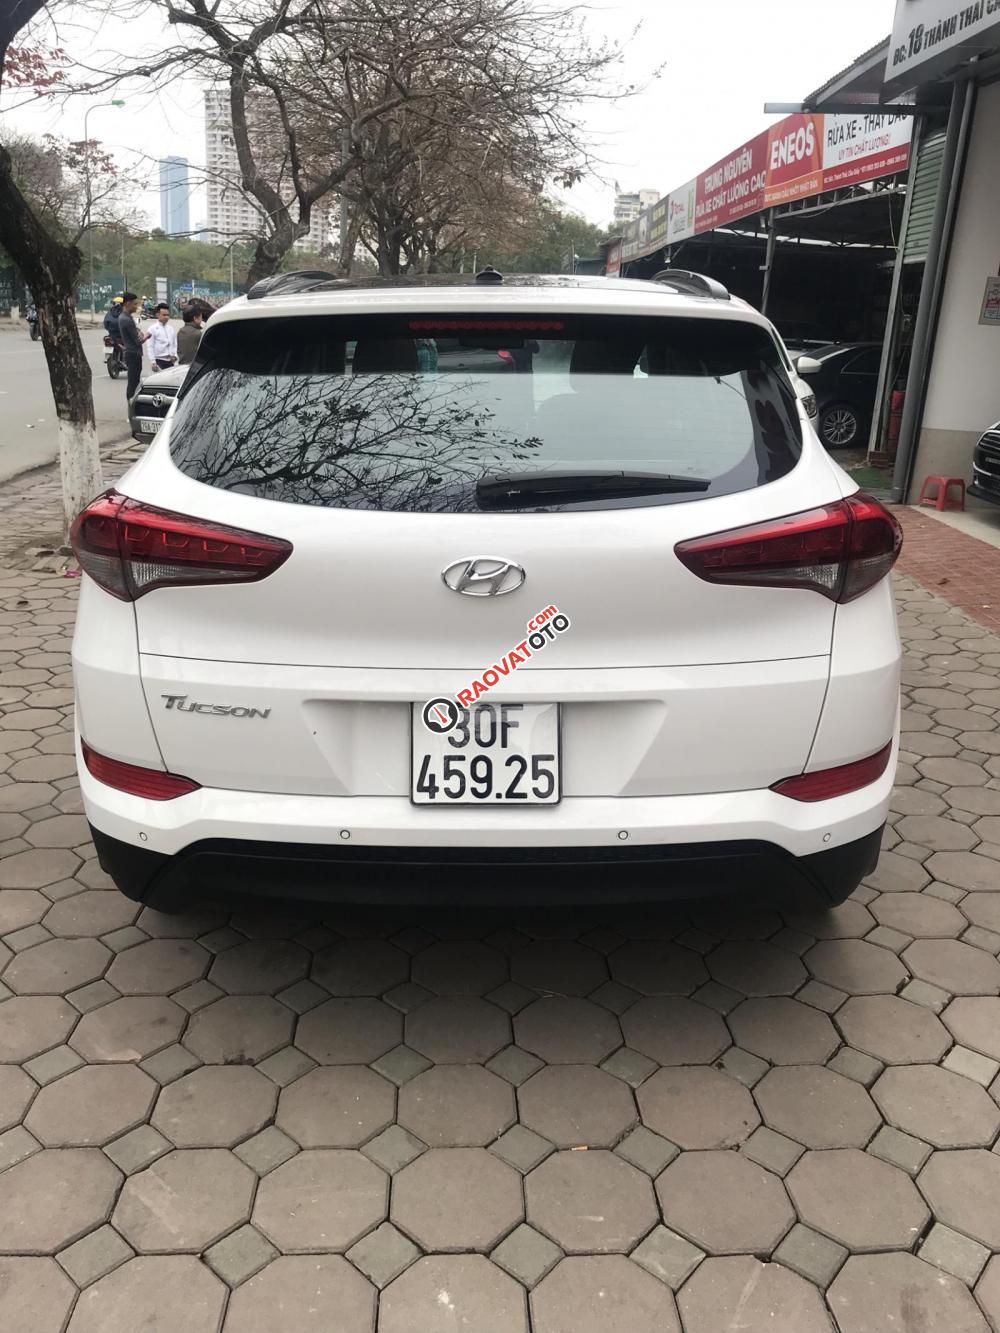 Bán ô tô Hyundai Tucson đời 2016 màu trắng, bản đặc biệt 2.0, nhập khẩu, biển HN-10